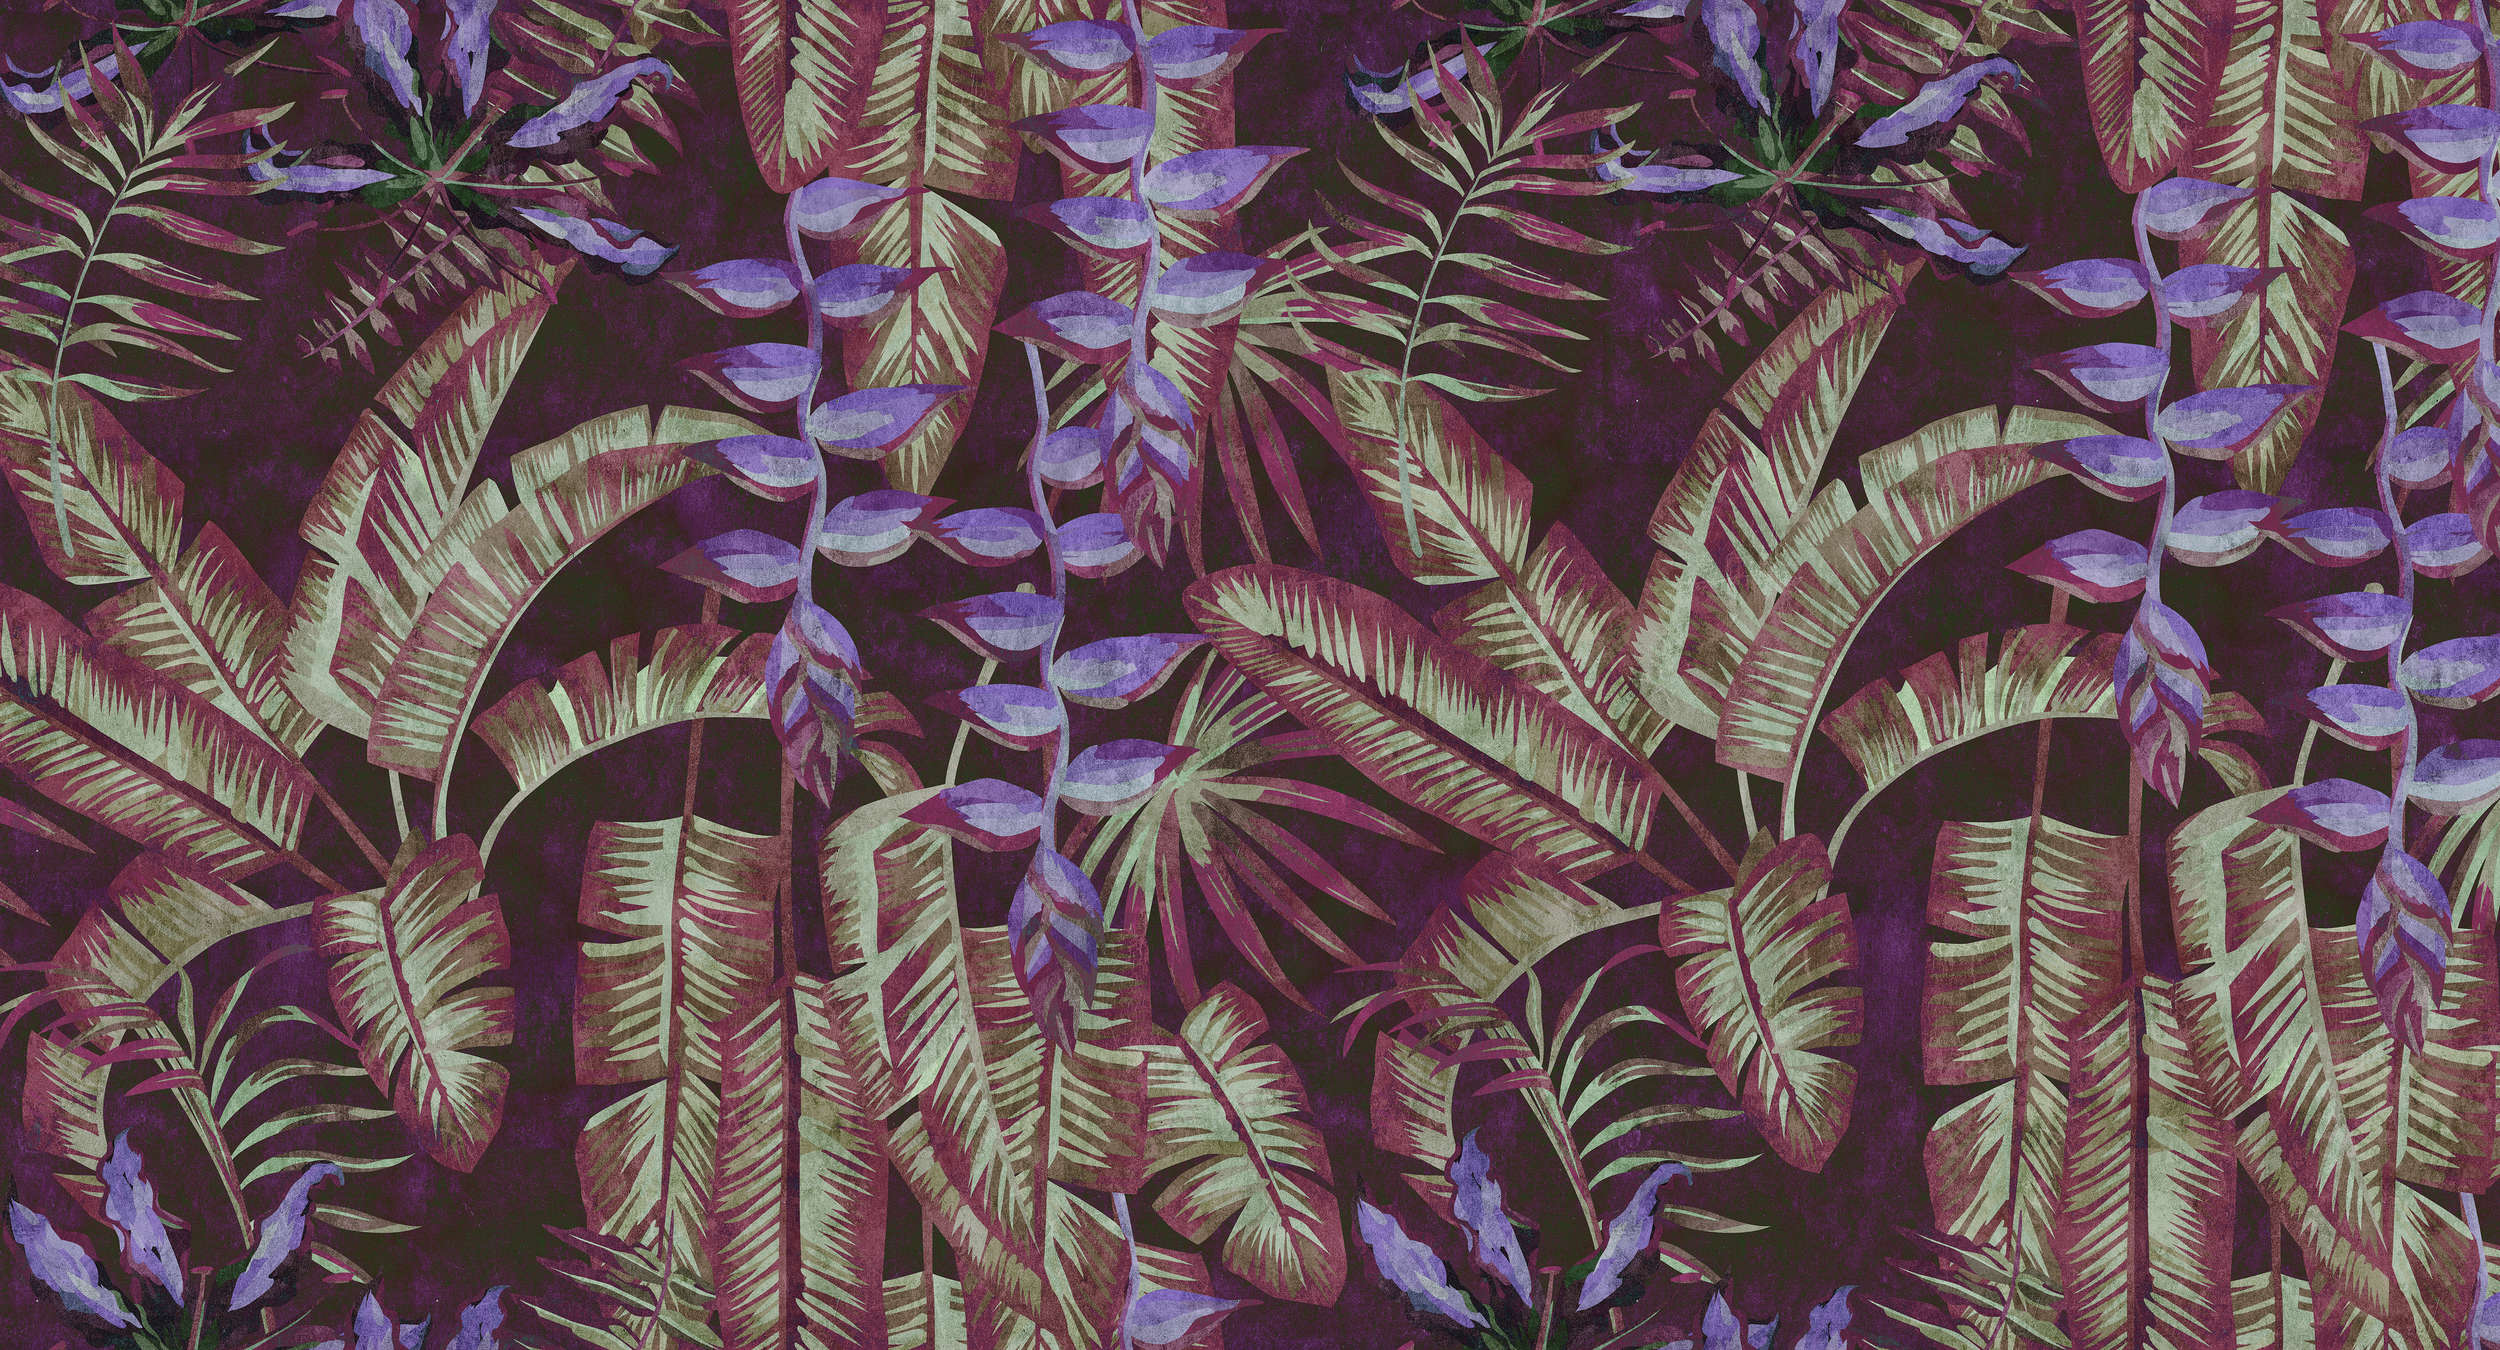             Tropicana 3 - Tropisch behang in vloeipapierstructuur met bladeren & varens - Rood, Paars | Pearl glad vlies
        